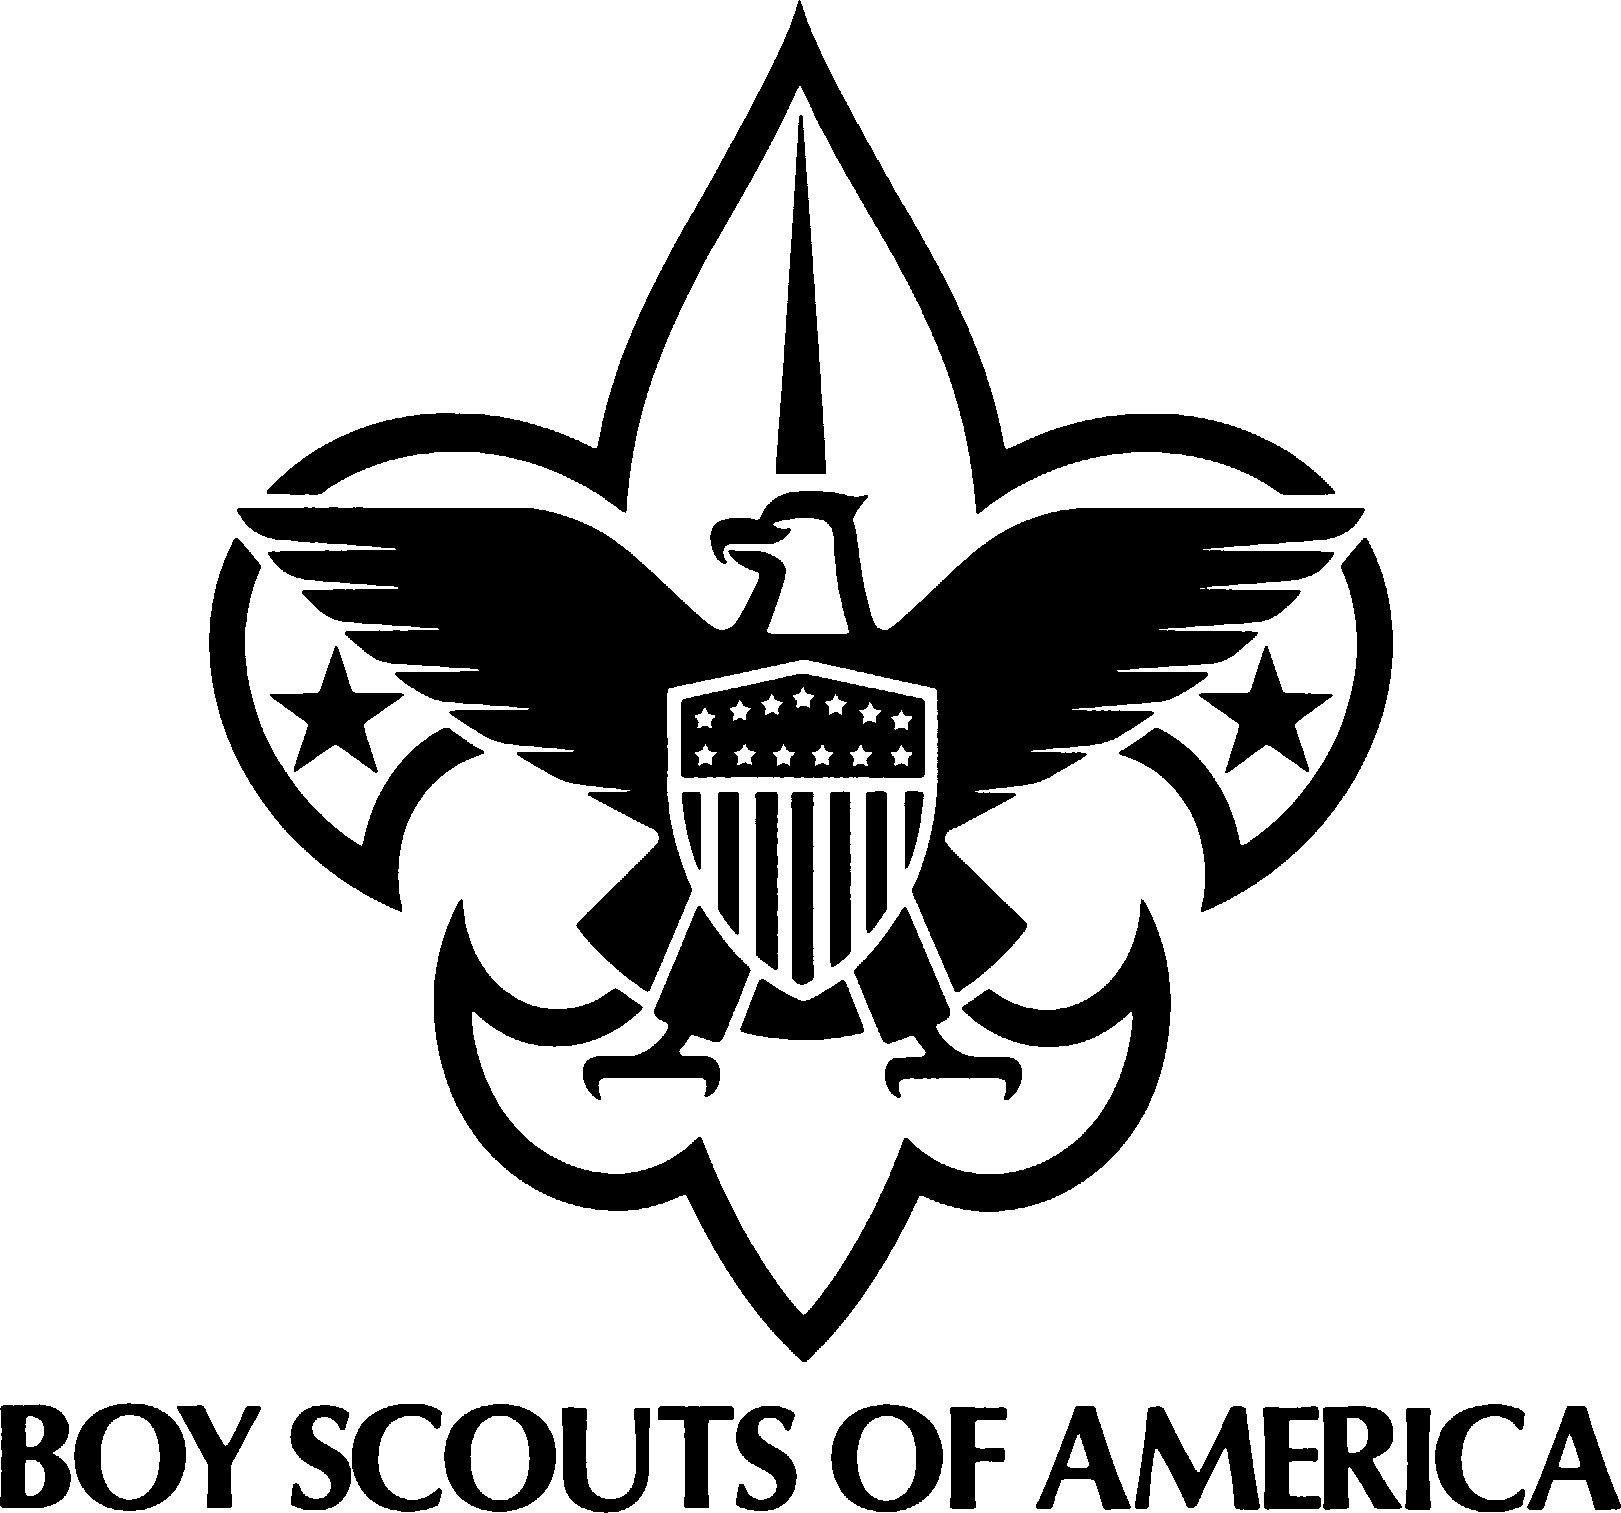 Boy Scout Law. Infinity x 12